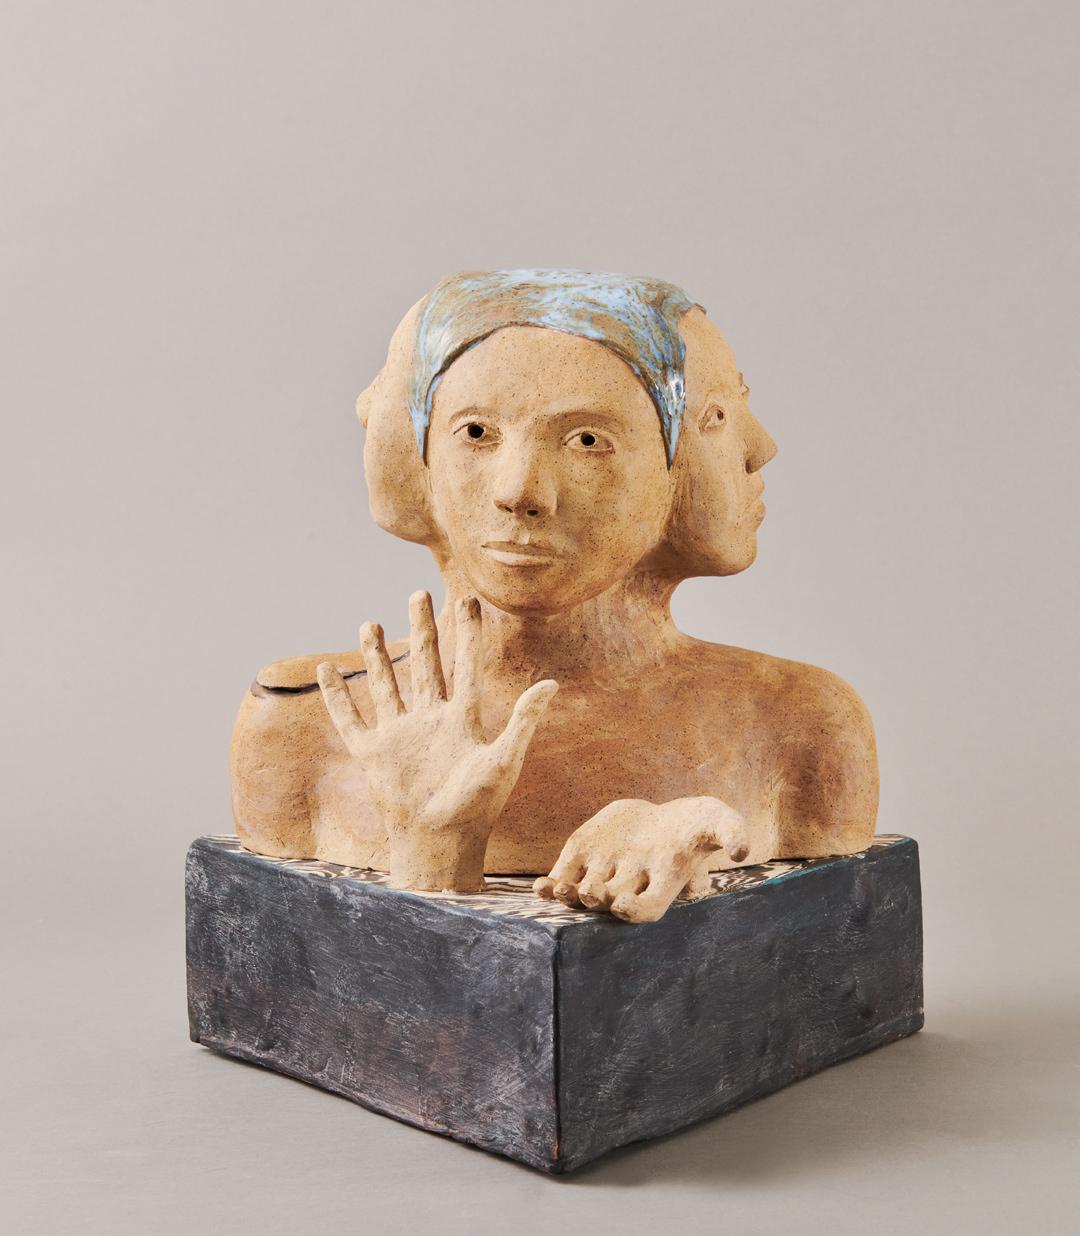 Vier Drei-Drei-Eins-Skulptur, zeitgenössische surrealistische Keramikskulptur des 21. Jahrhunderts